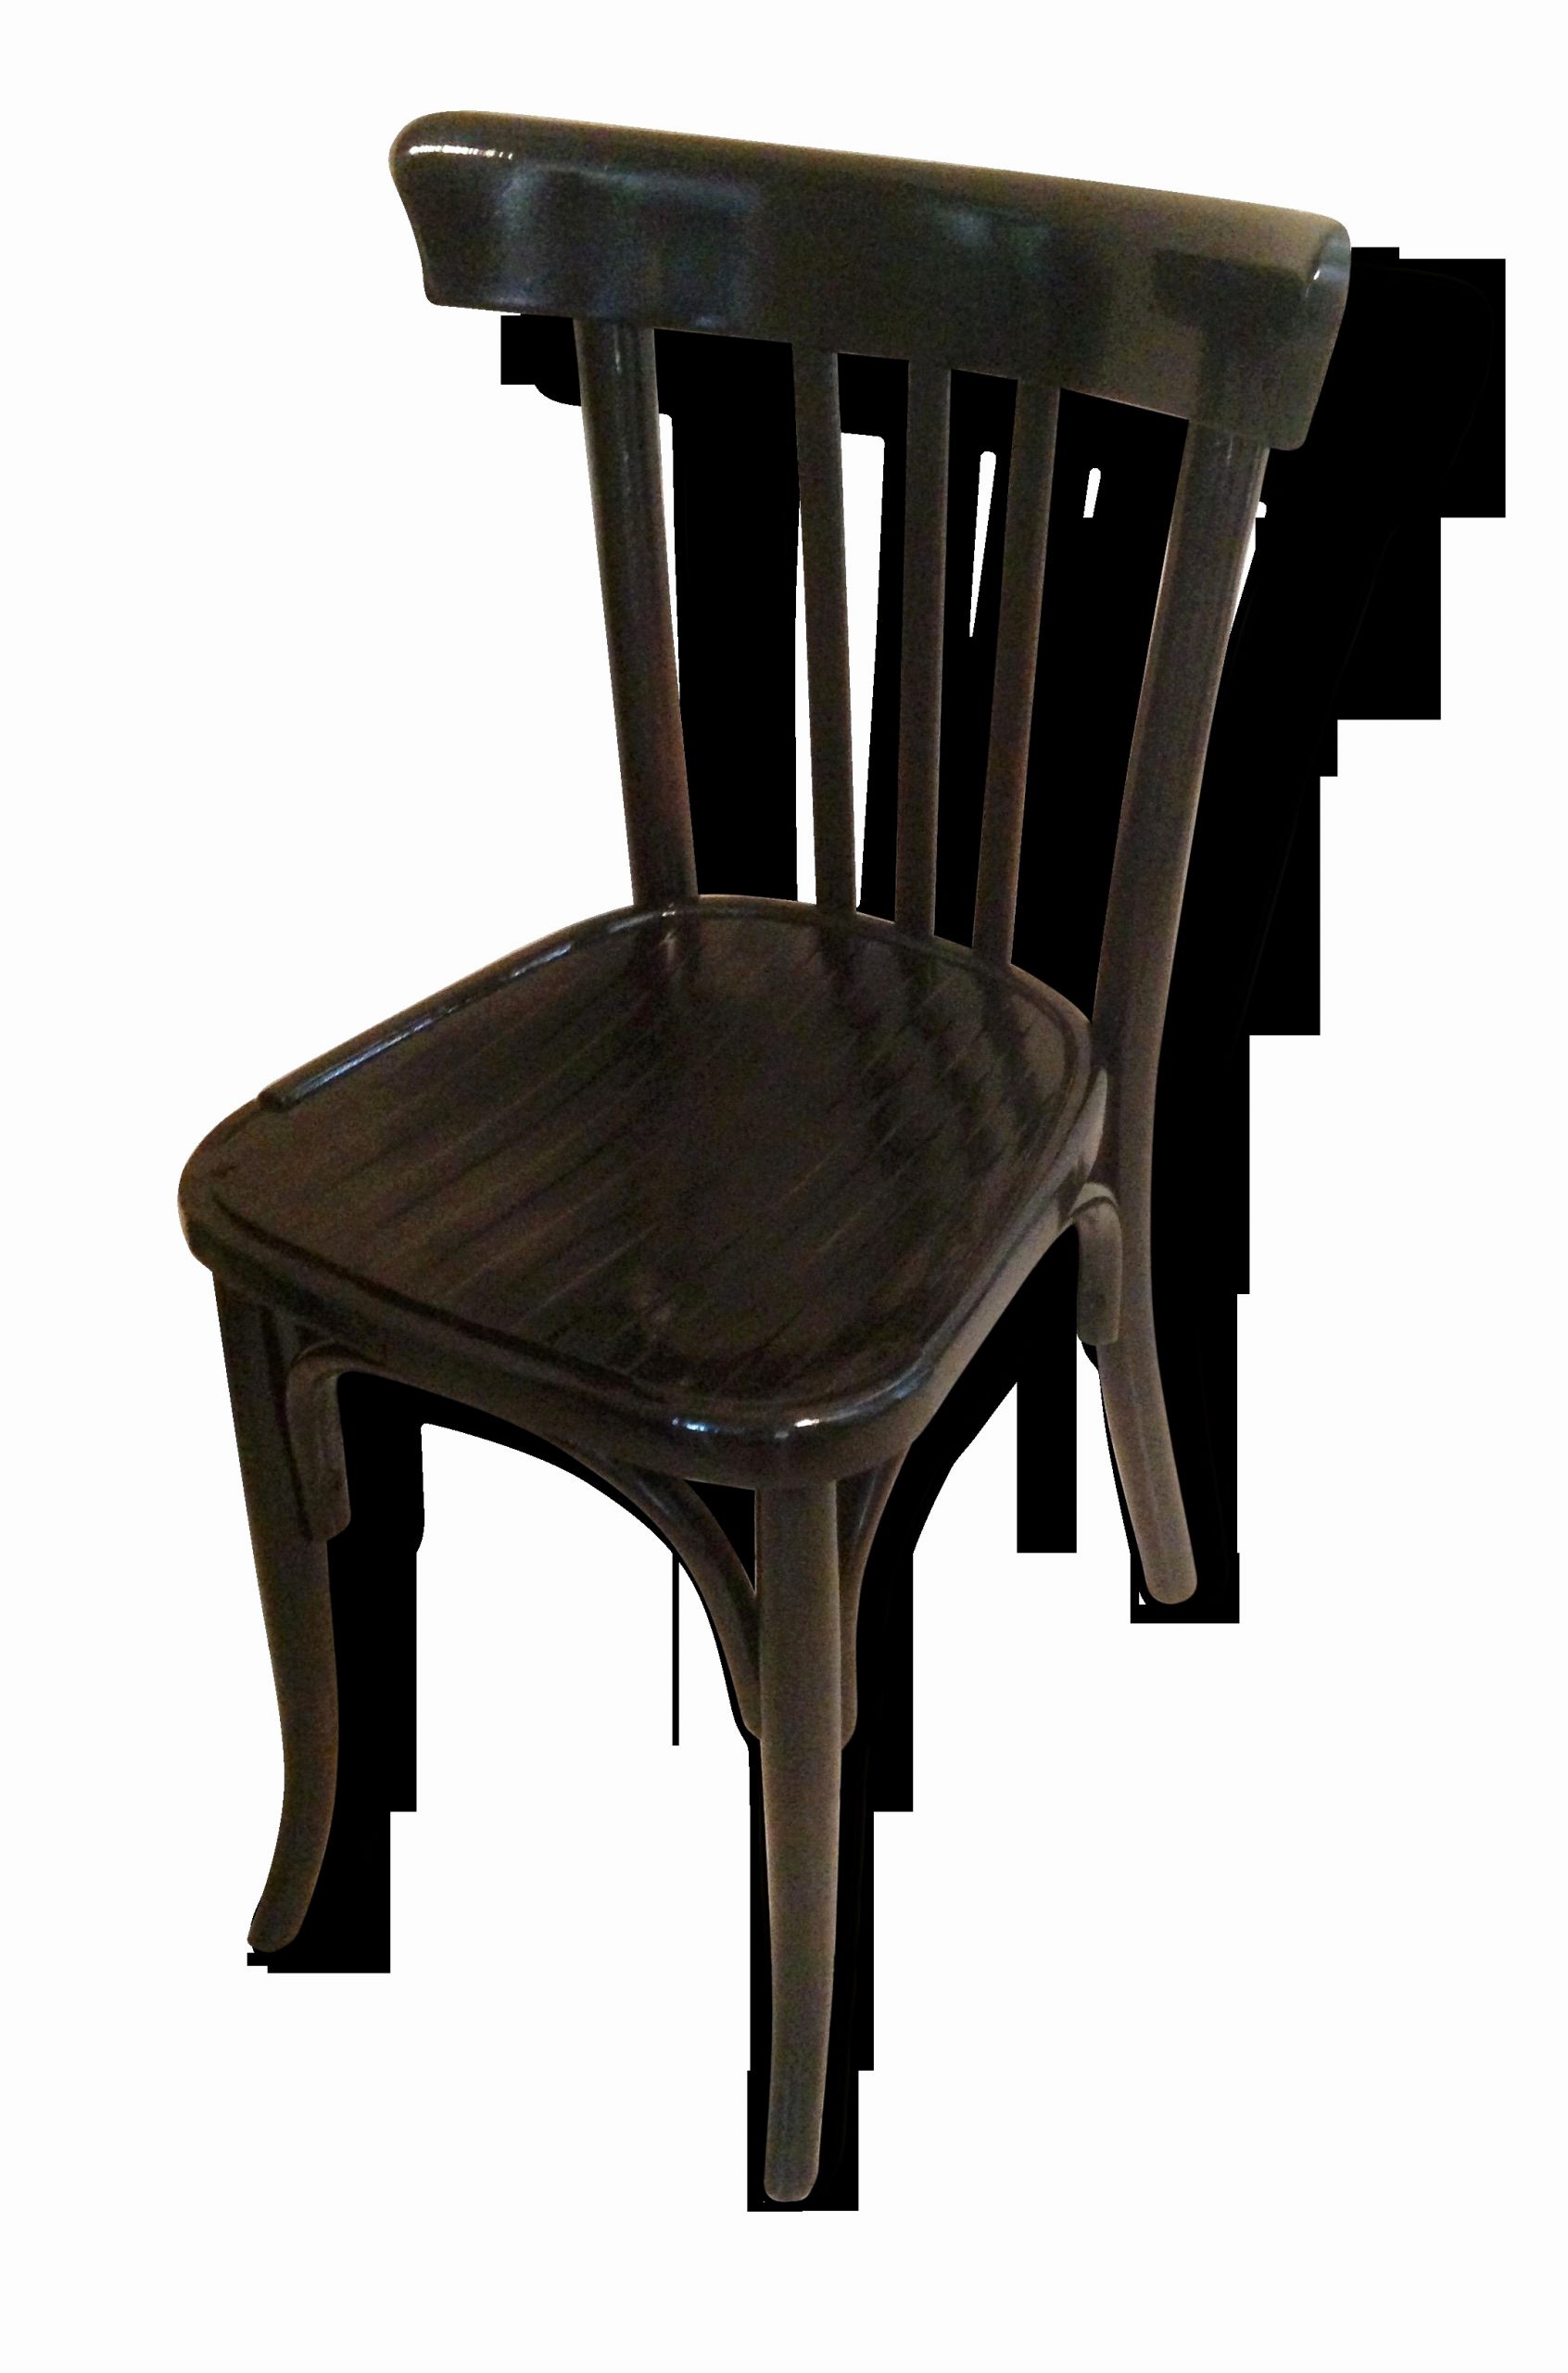 cuisine bistrot noire photo de chaise bistrot noire luxe chaise de bistrot 50 beau chaises cuisine of cuisine bistrot noire